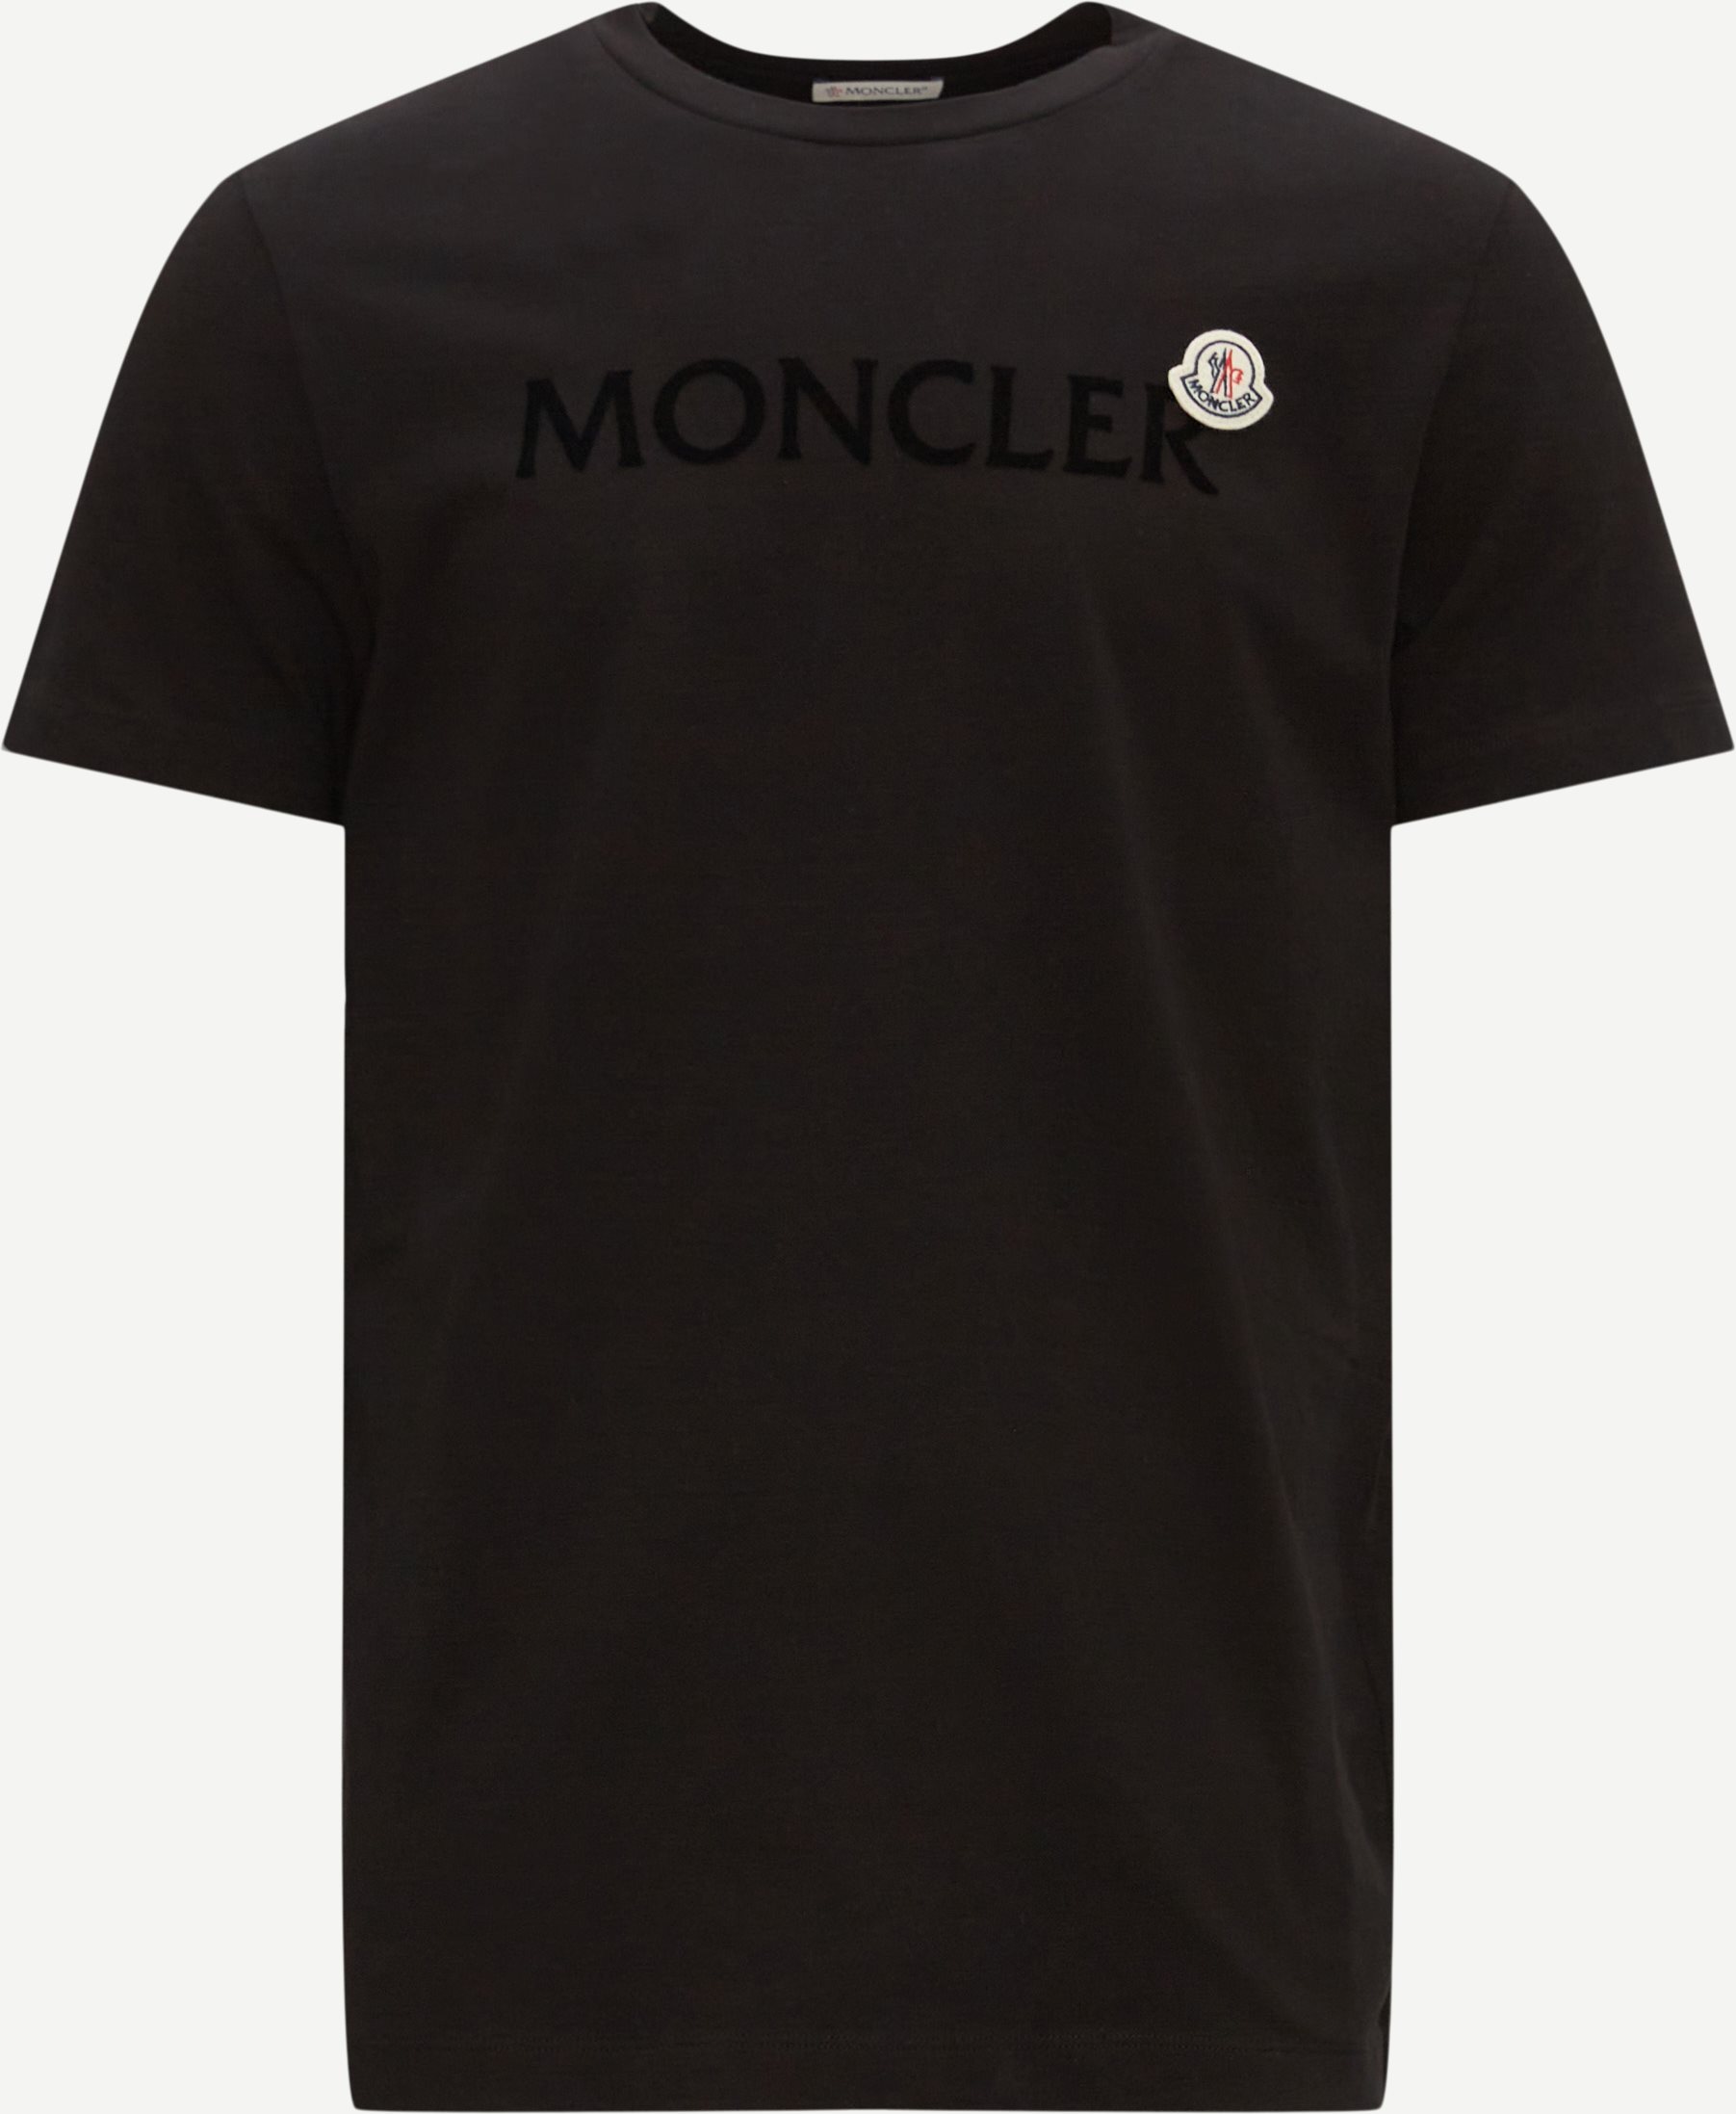 Moncler T-shirts 8C00047 8390T Black